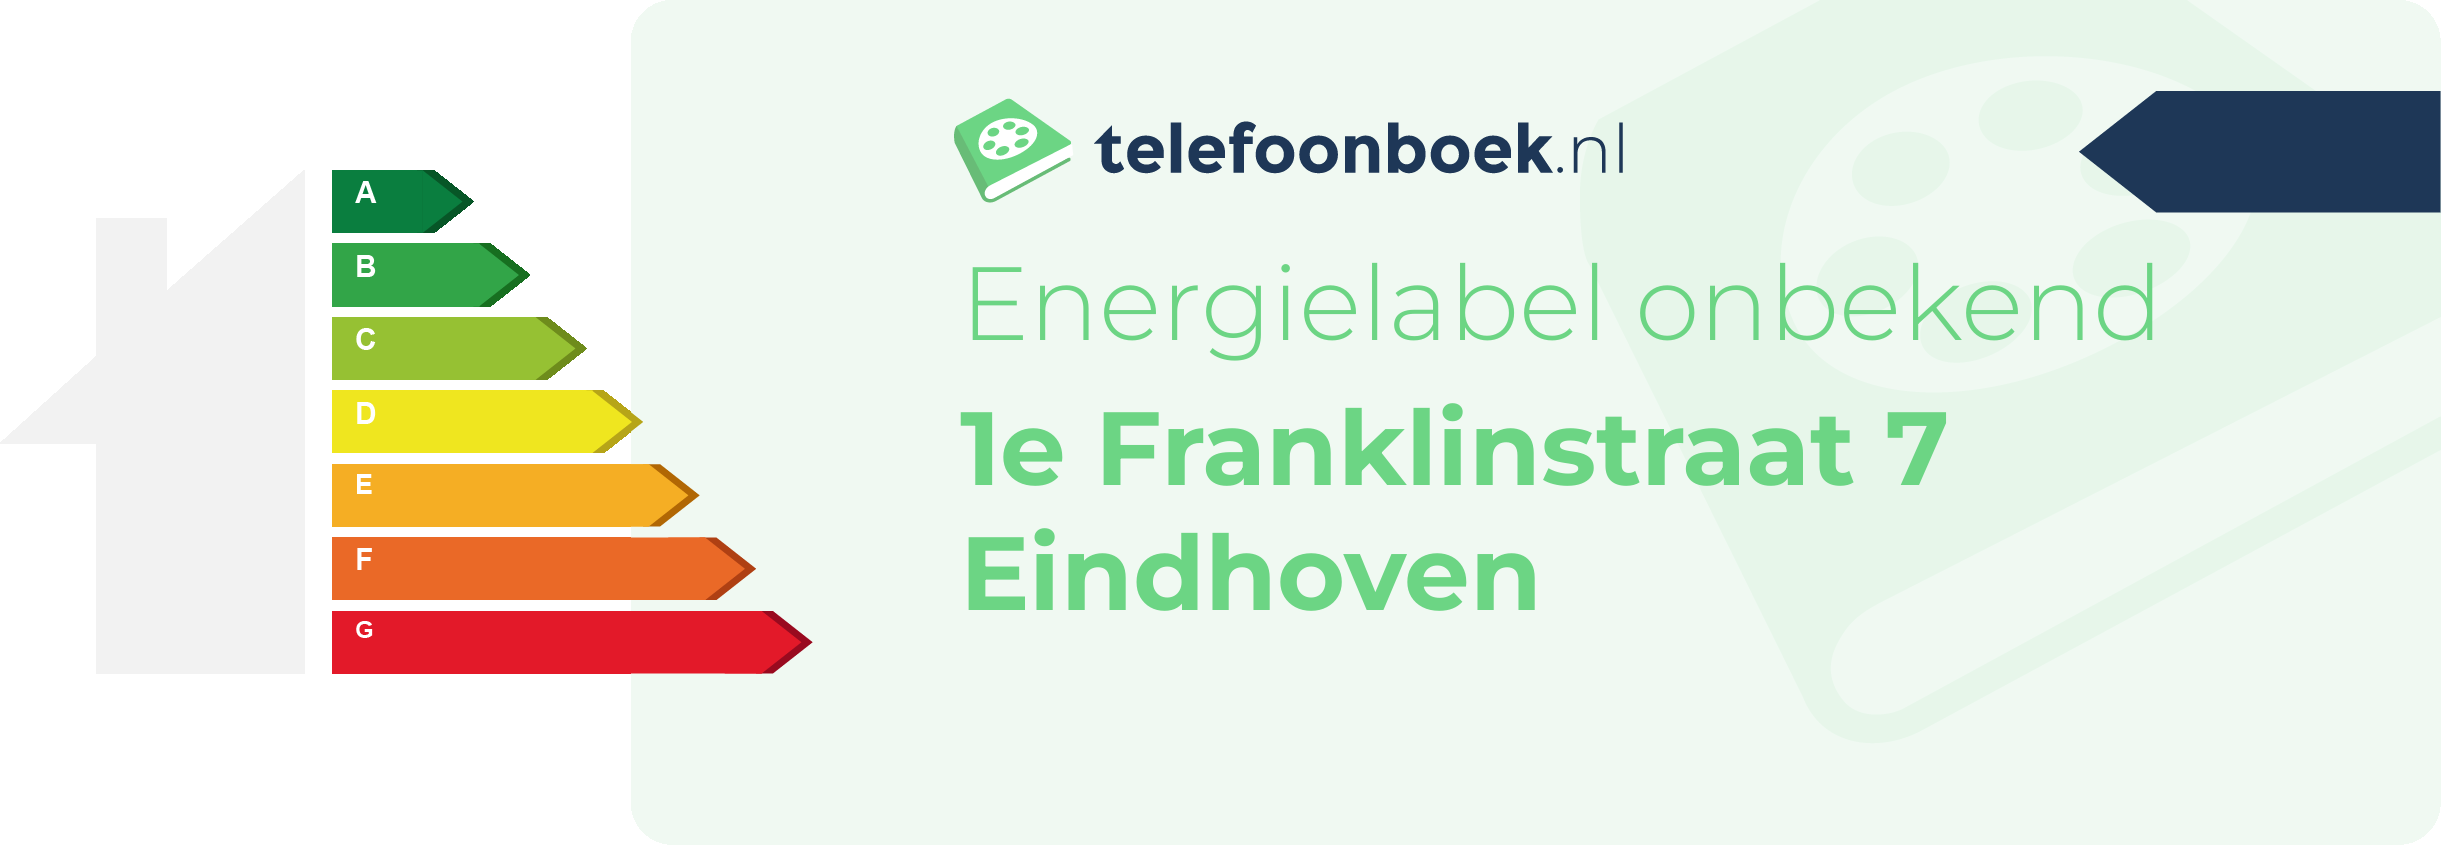 Energielabel 1e Franklinstraat 7 Eindhoven